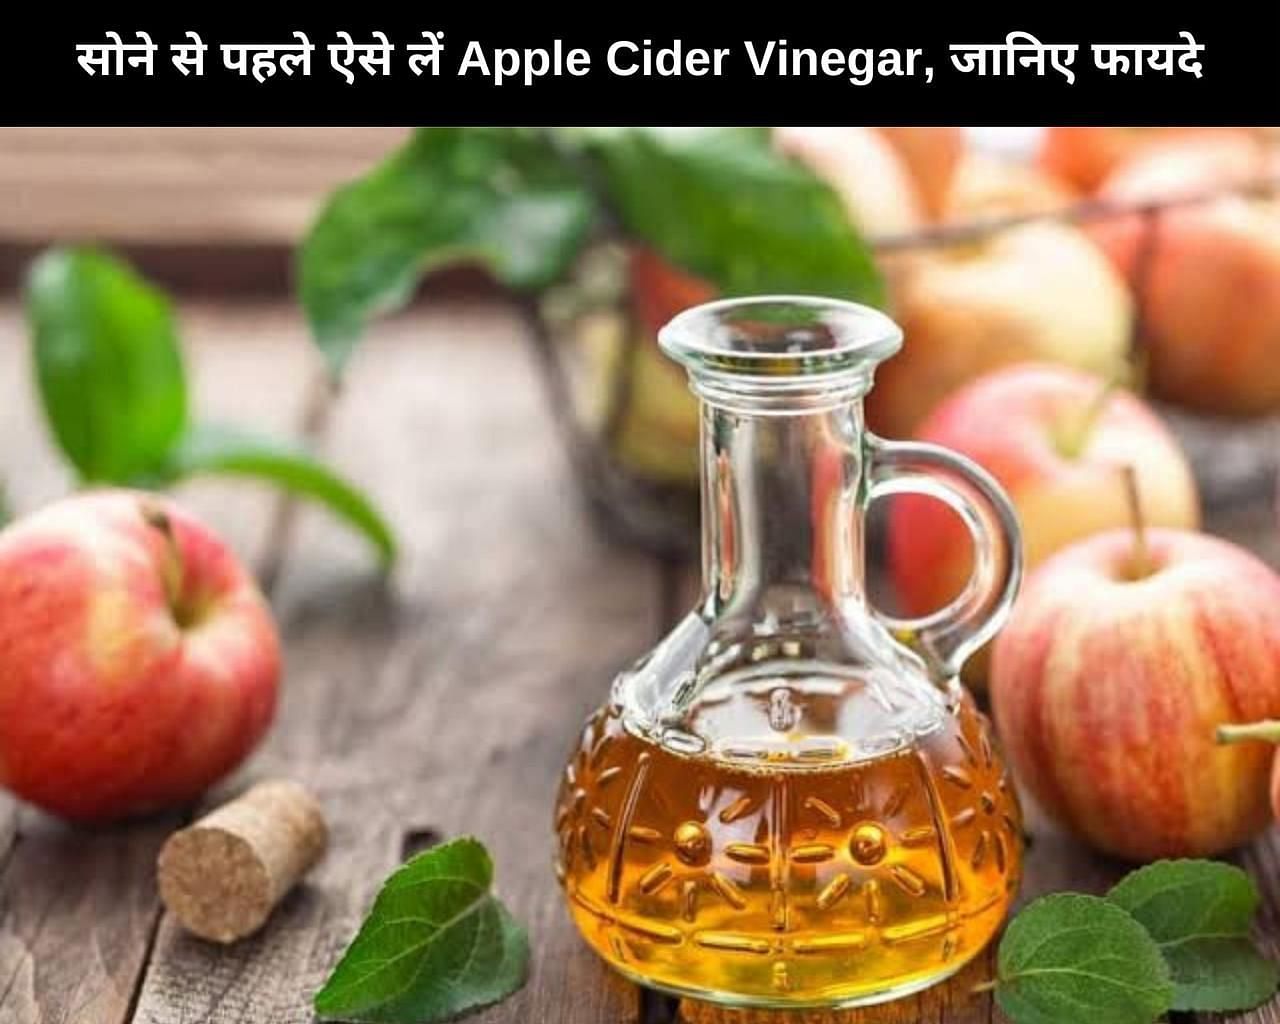 सोने से पहले ऐसे लें Apple Cider Vinegar, जानिए 8 फायदे (फोटो - sportskeedaहिन्दी)